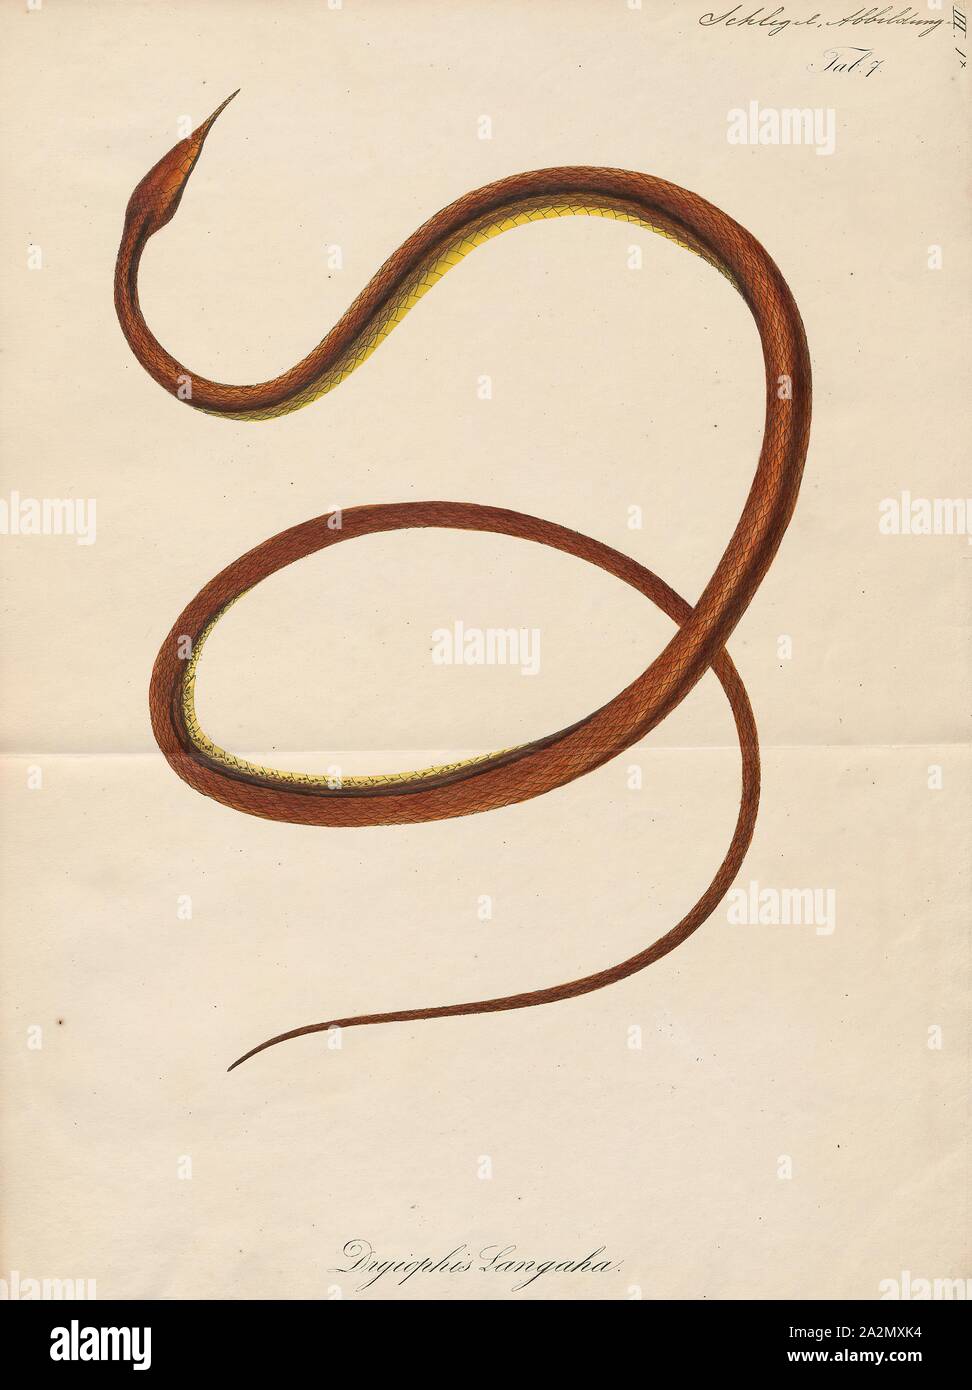 Langaha nasuta, Drucken, Langaha ist eine Gattung der colubrid Snakes in der unterfamilie Pseudoxyrhophiinae. Die Gattung enthält drei Arten, die alle in Madagaskar endemisch sind., 1700-1880 Stockfoto